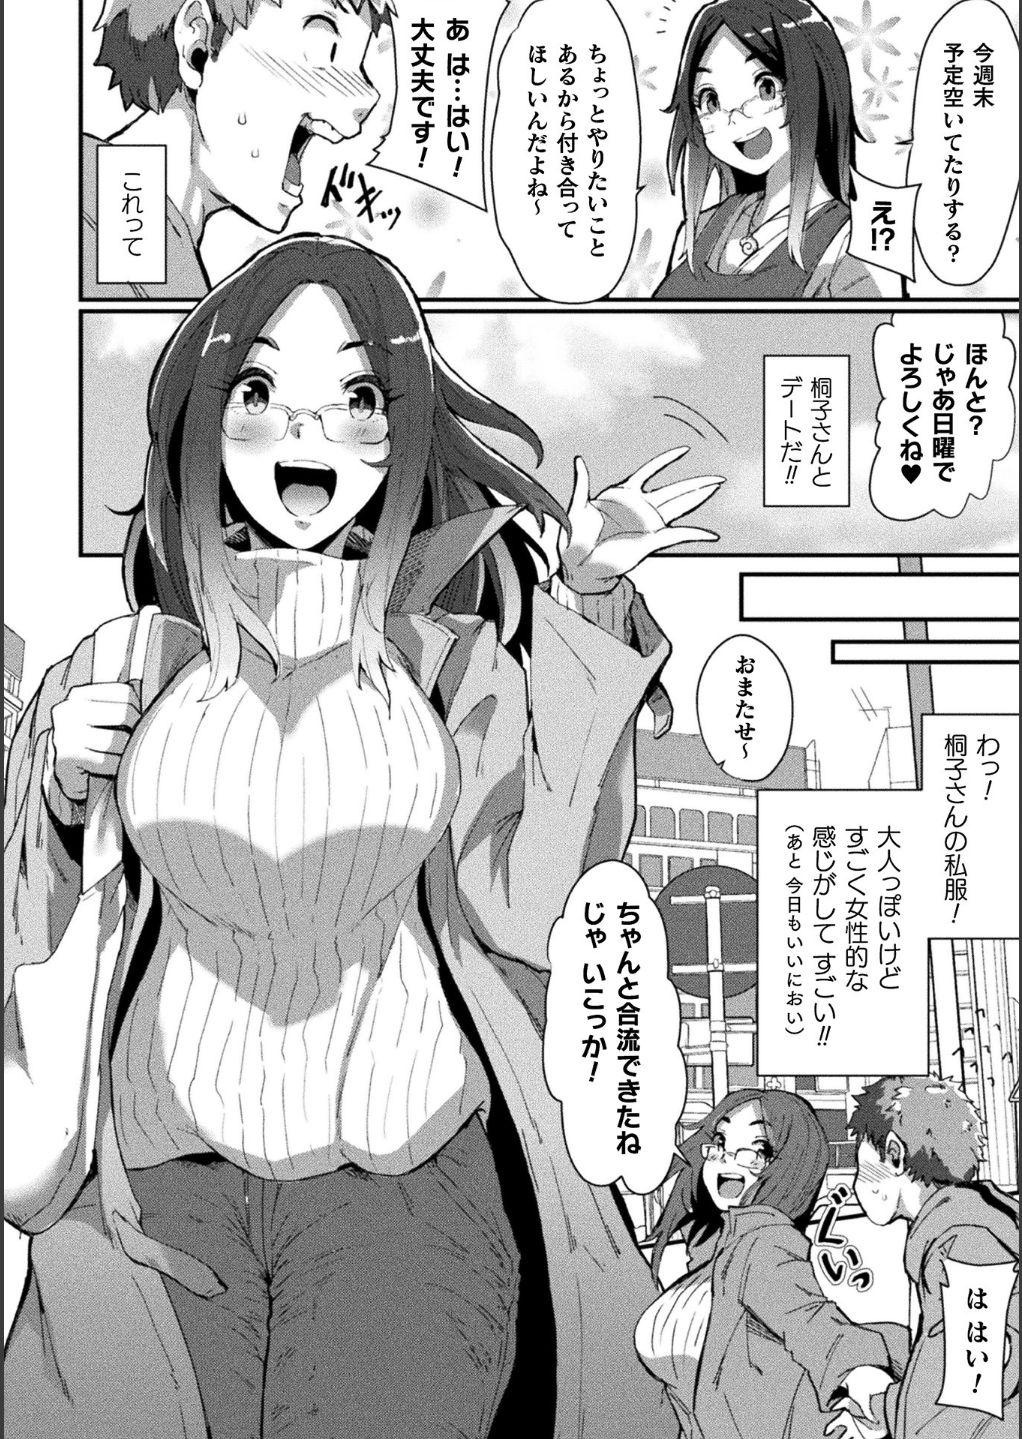 Bessatsu Comic Unreal Bishoujo ni Gitai suru Igyou-tachi Digital Ban Vol. 1 37